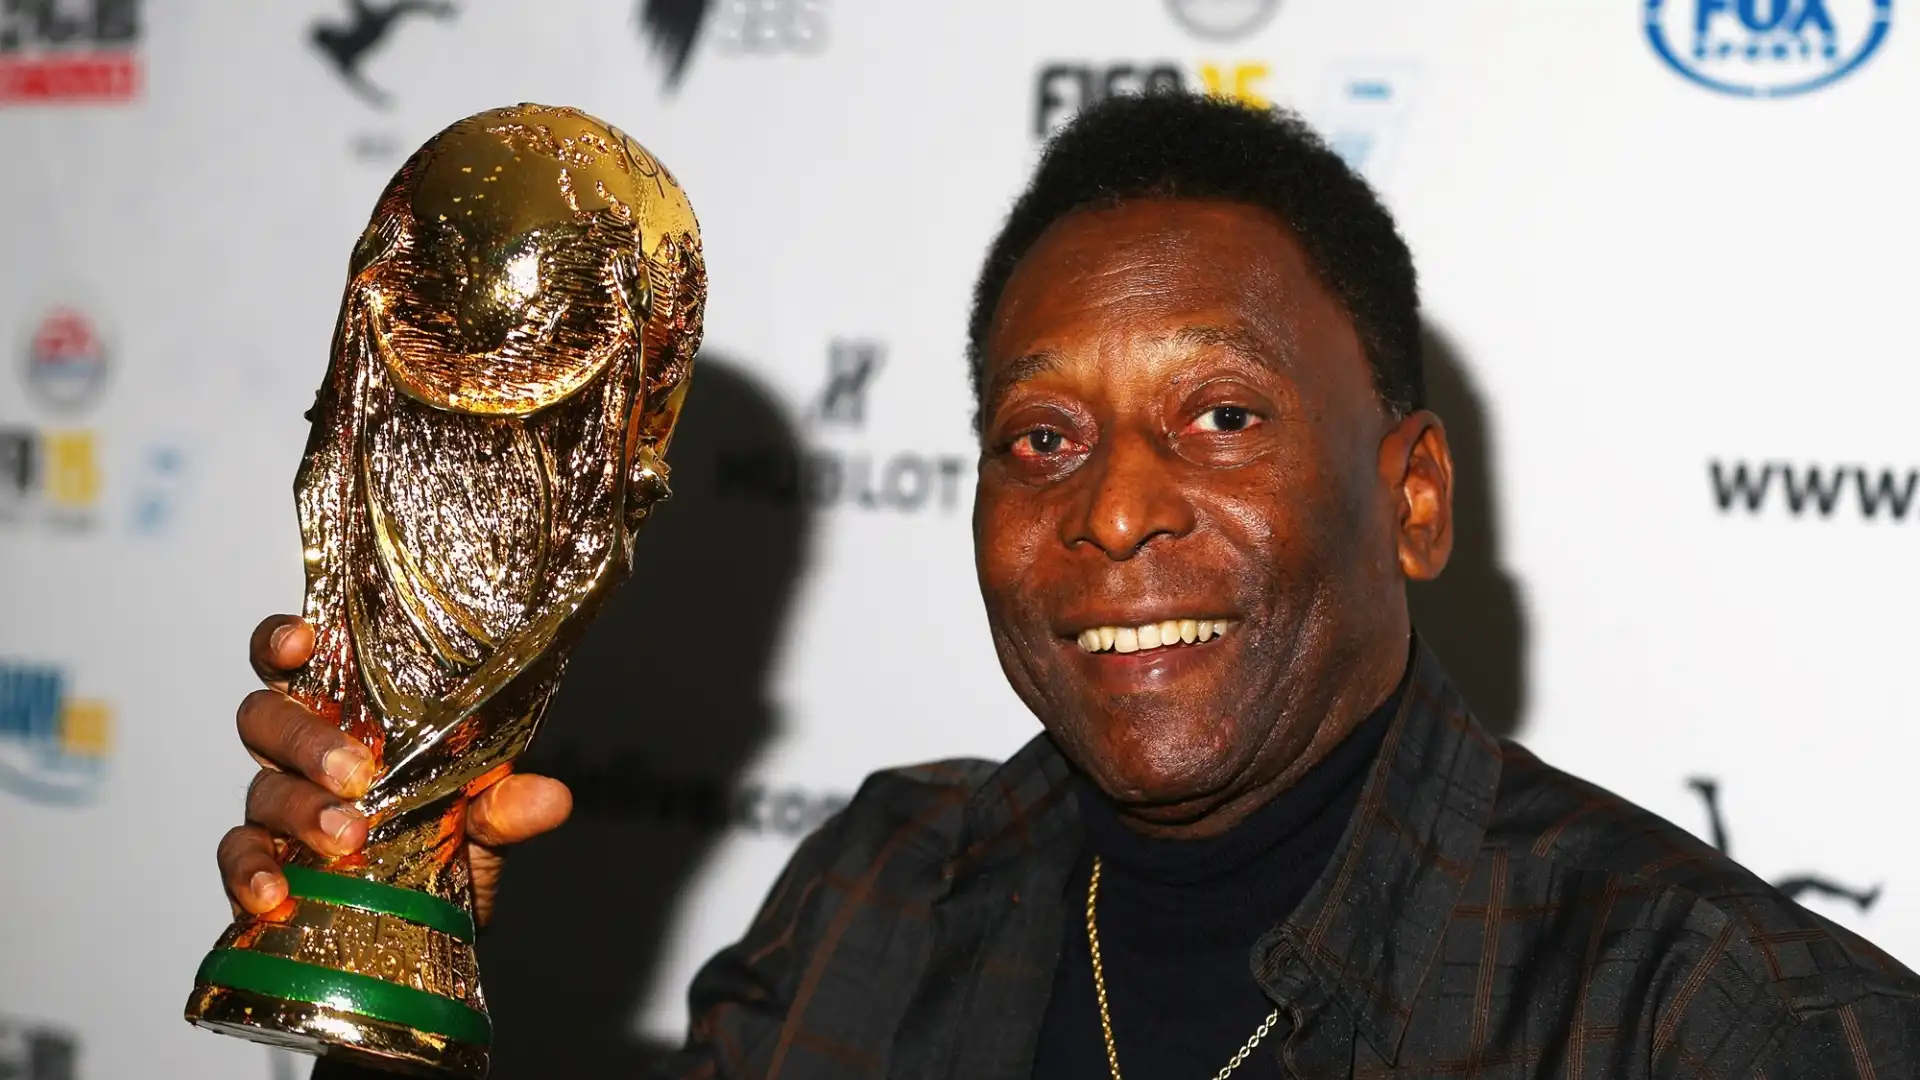 "Ma io preferisco Pelé, un uomo di cuore, ha una grande umanità".